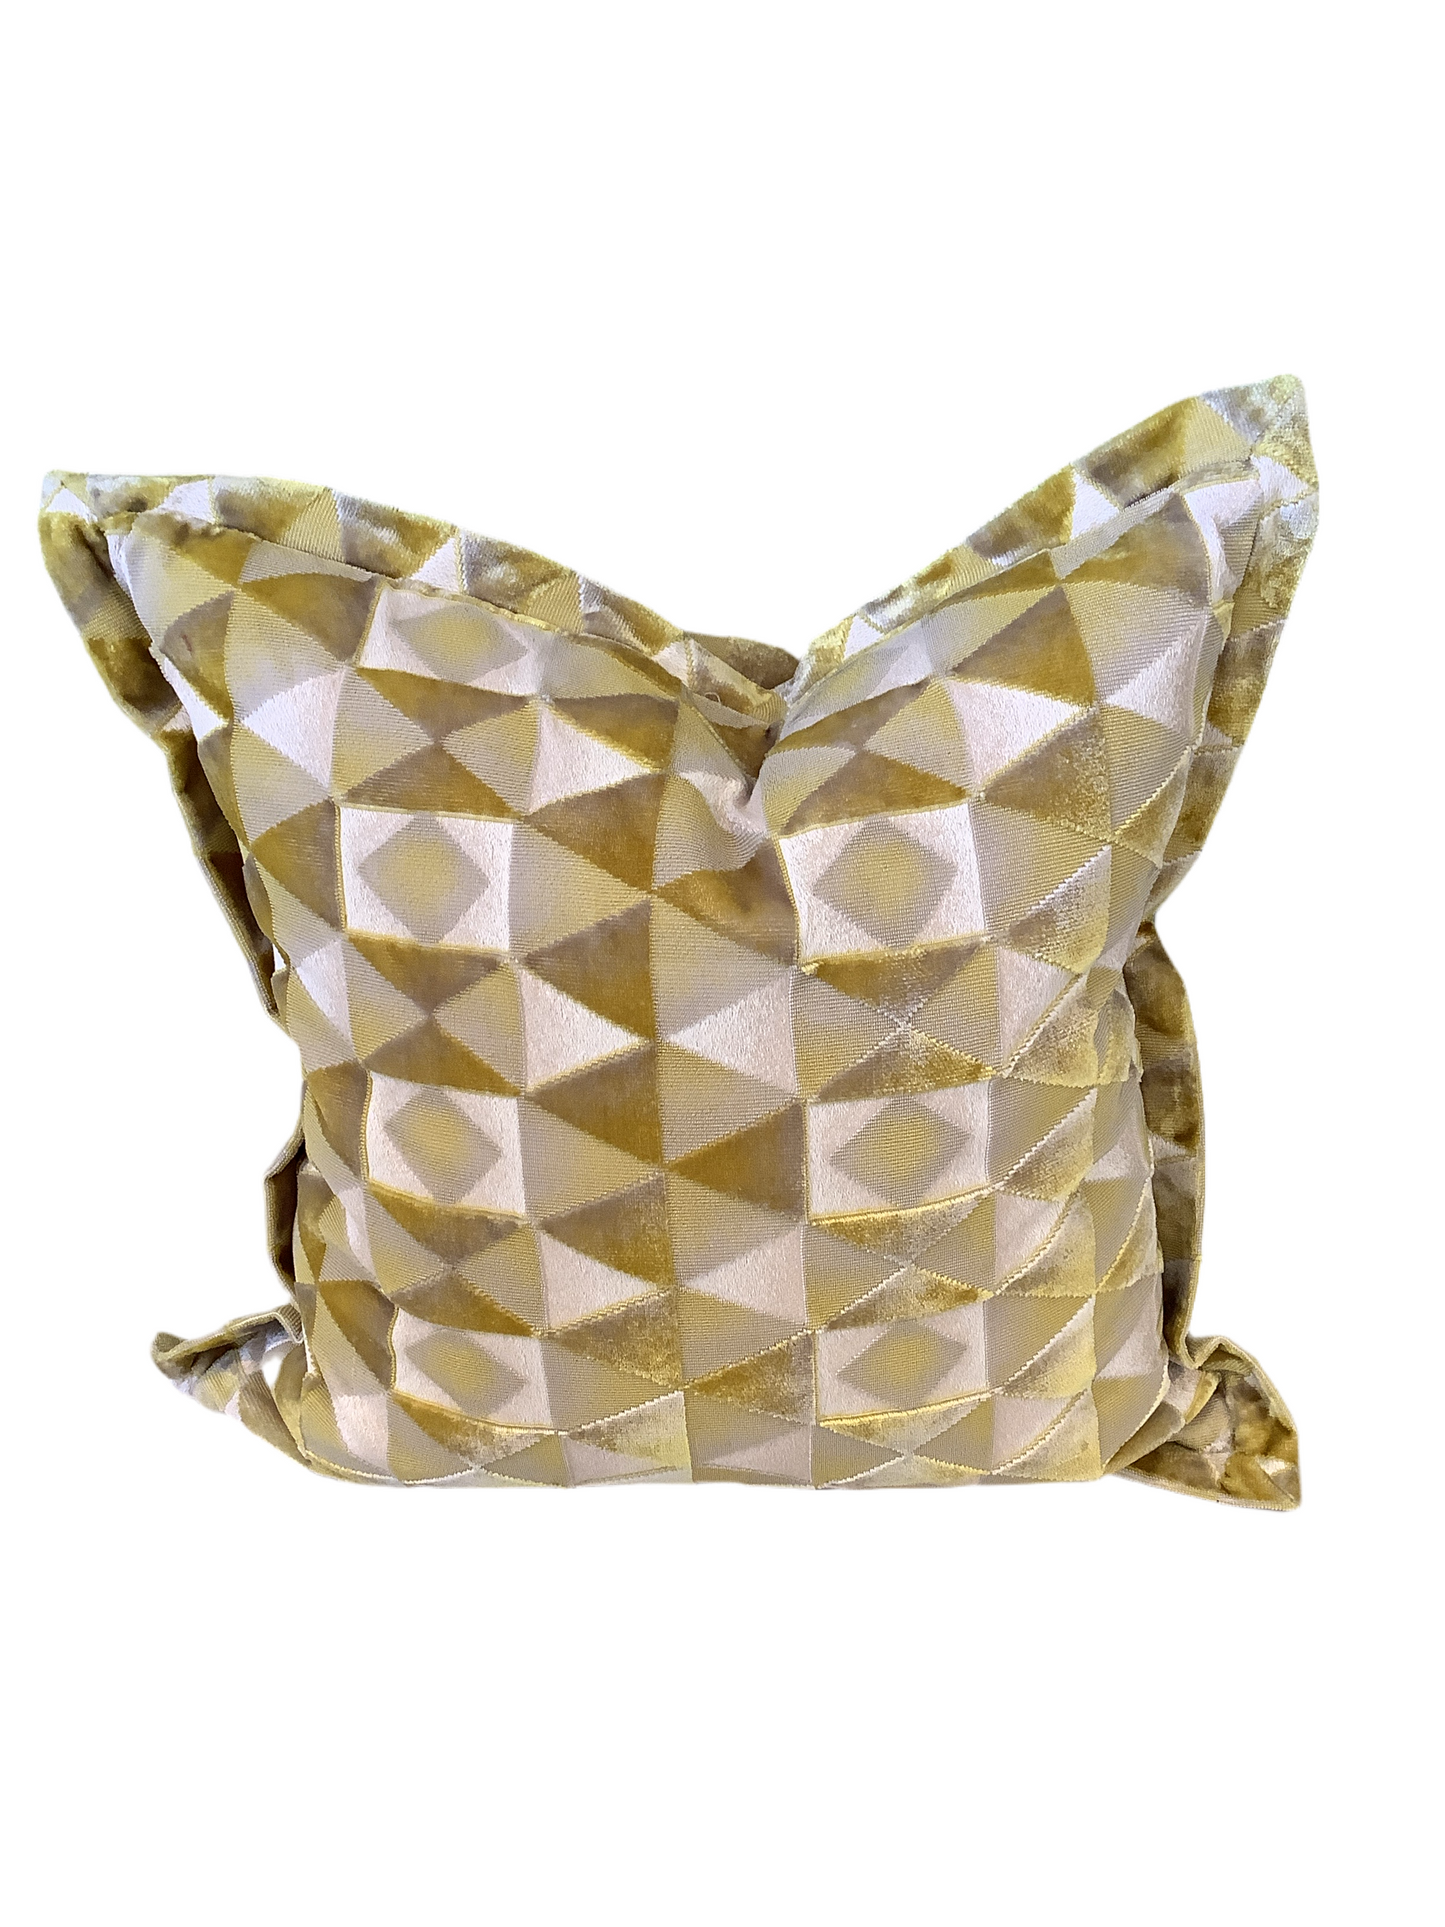 Pillow Geometric Cut Citron Velvet 2 available